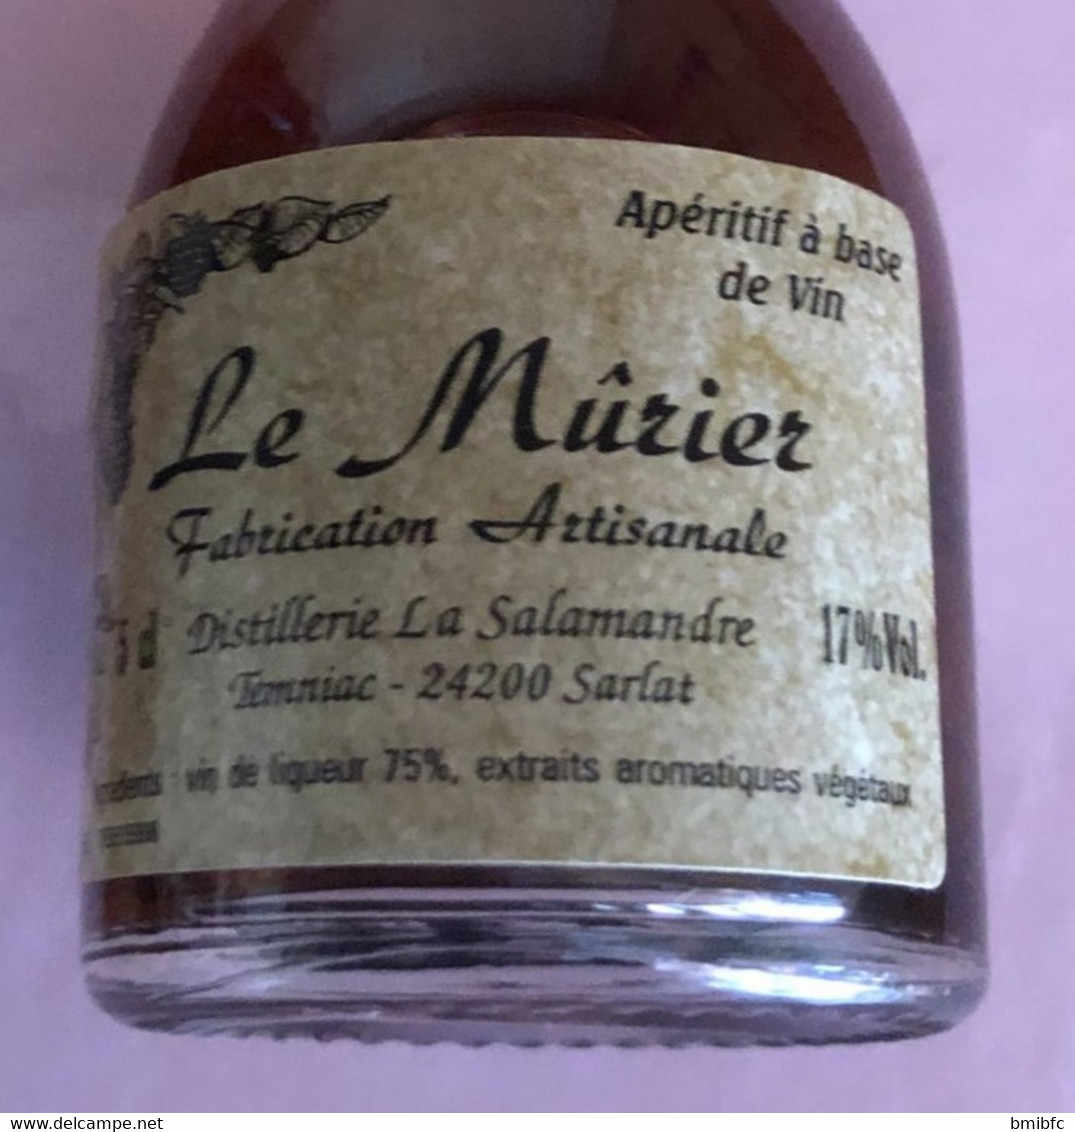 Le  Mûrier Fabrication Artisanale Distillerie La Salamandre  -  Temniac  - 24200 SARLAT - 5cl - 17% Vol - Mignonnettes